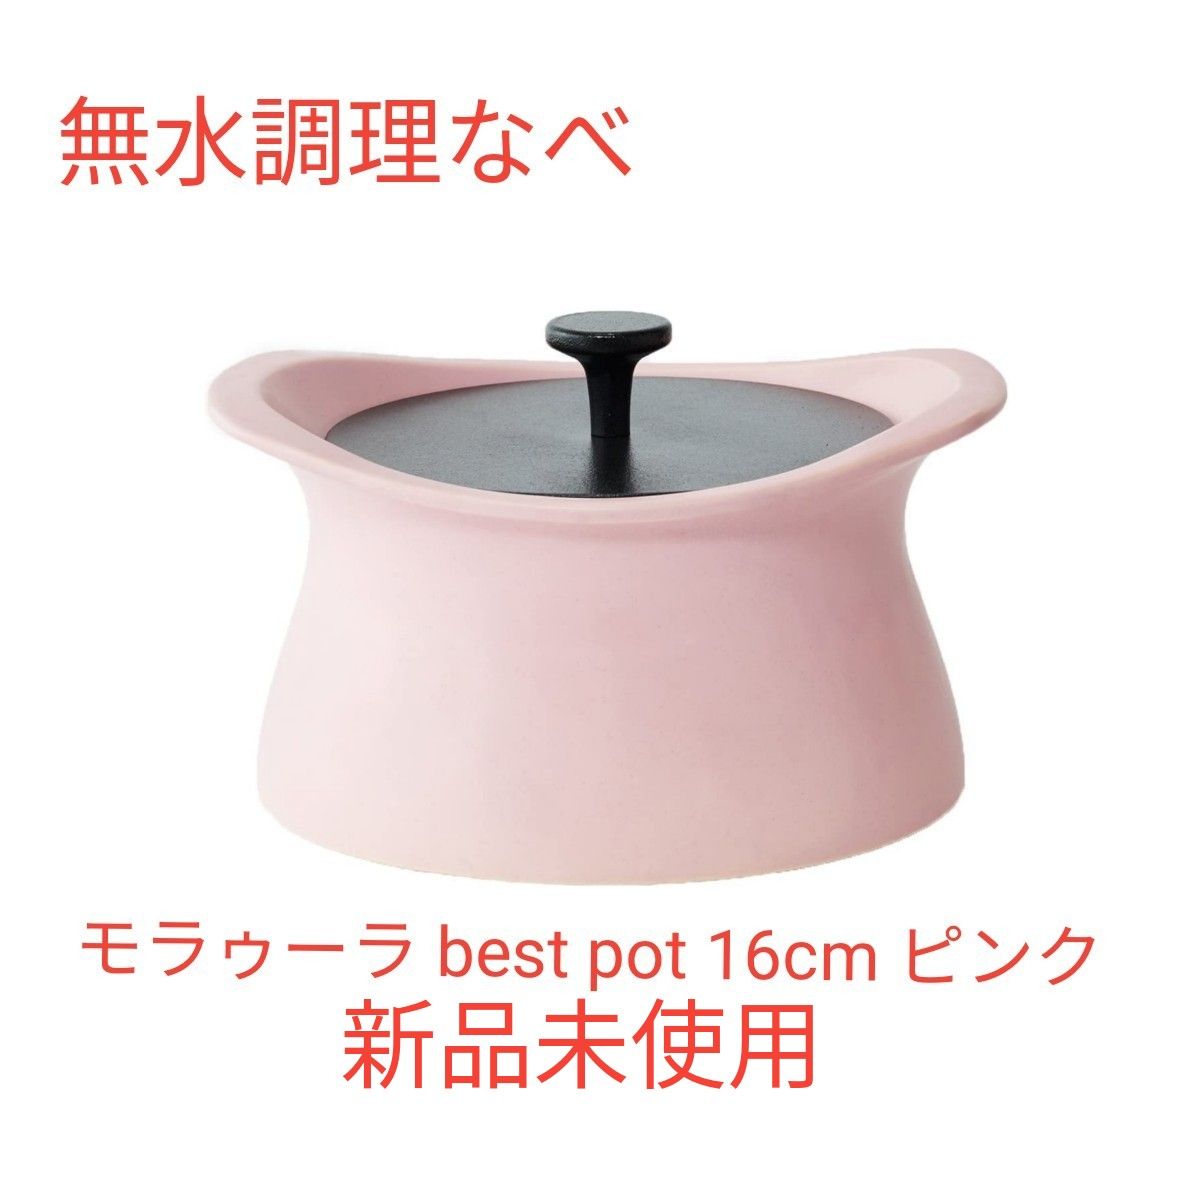 無水調理なべ MOLATURA モラトゥーラ best pot 16cm ピンク 土鍋